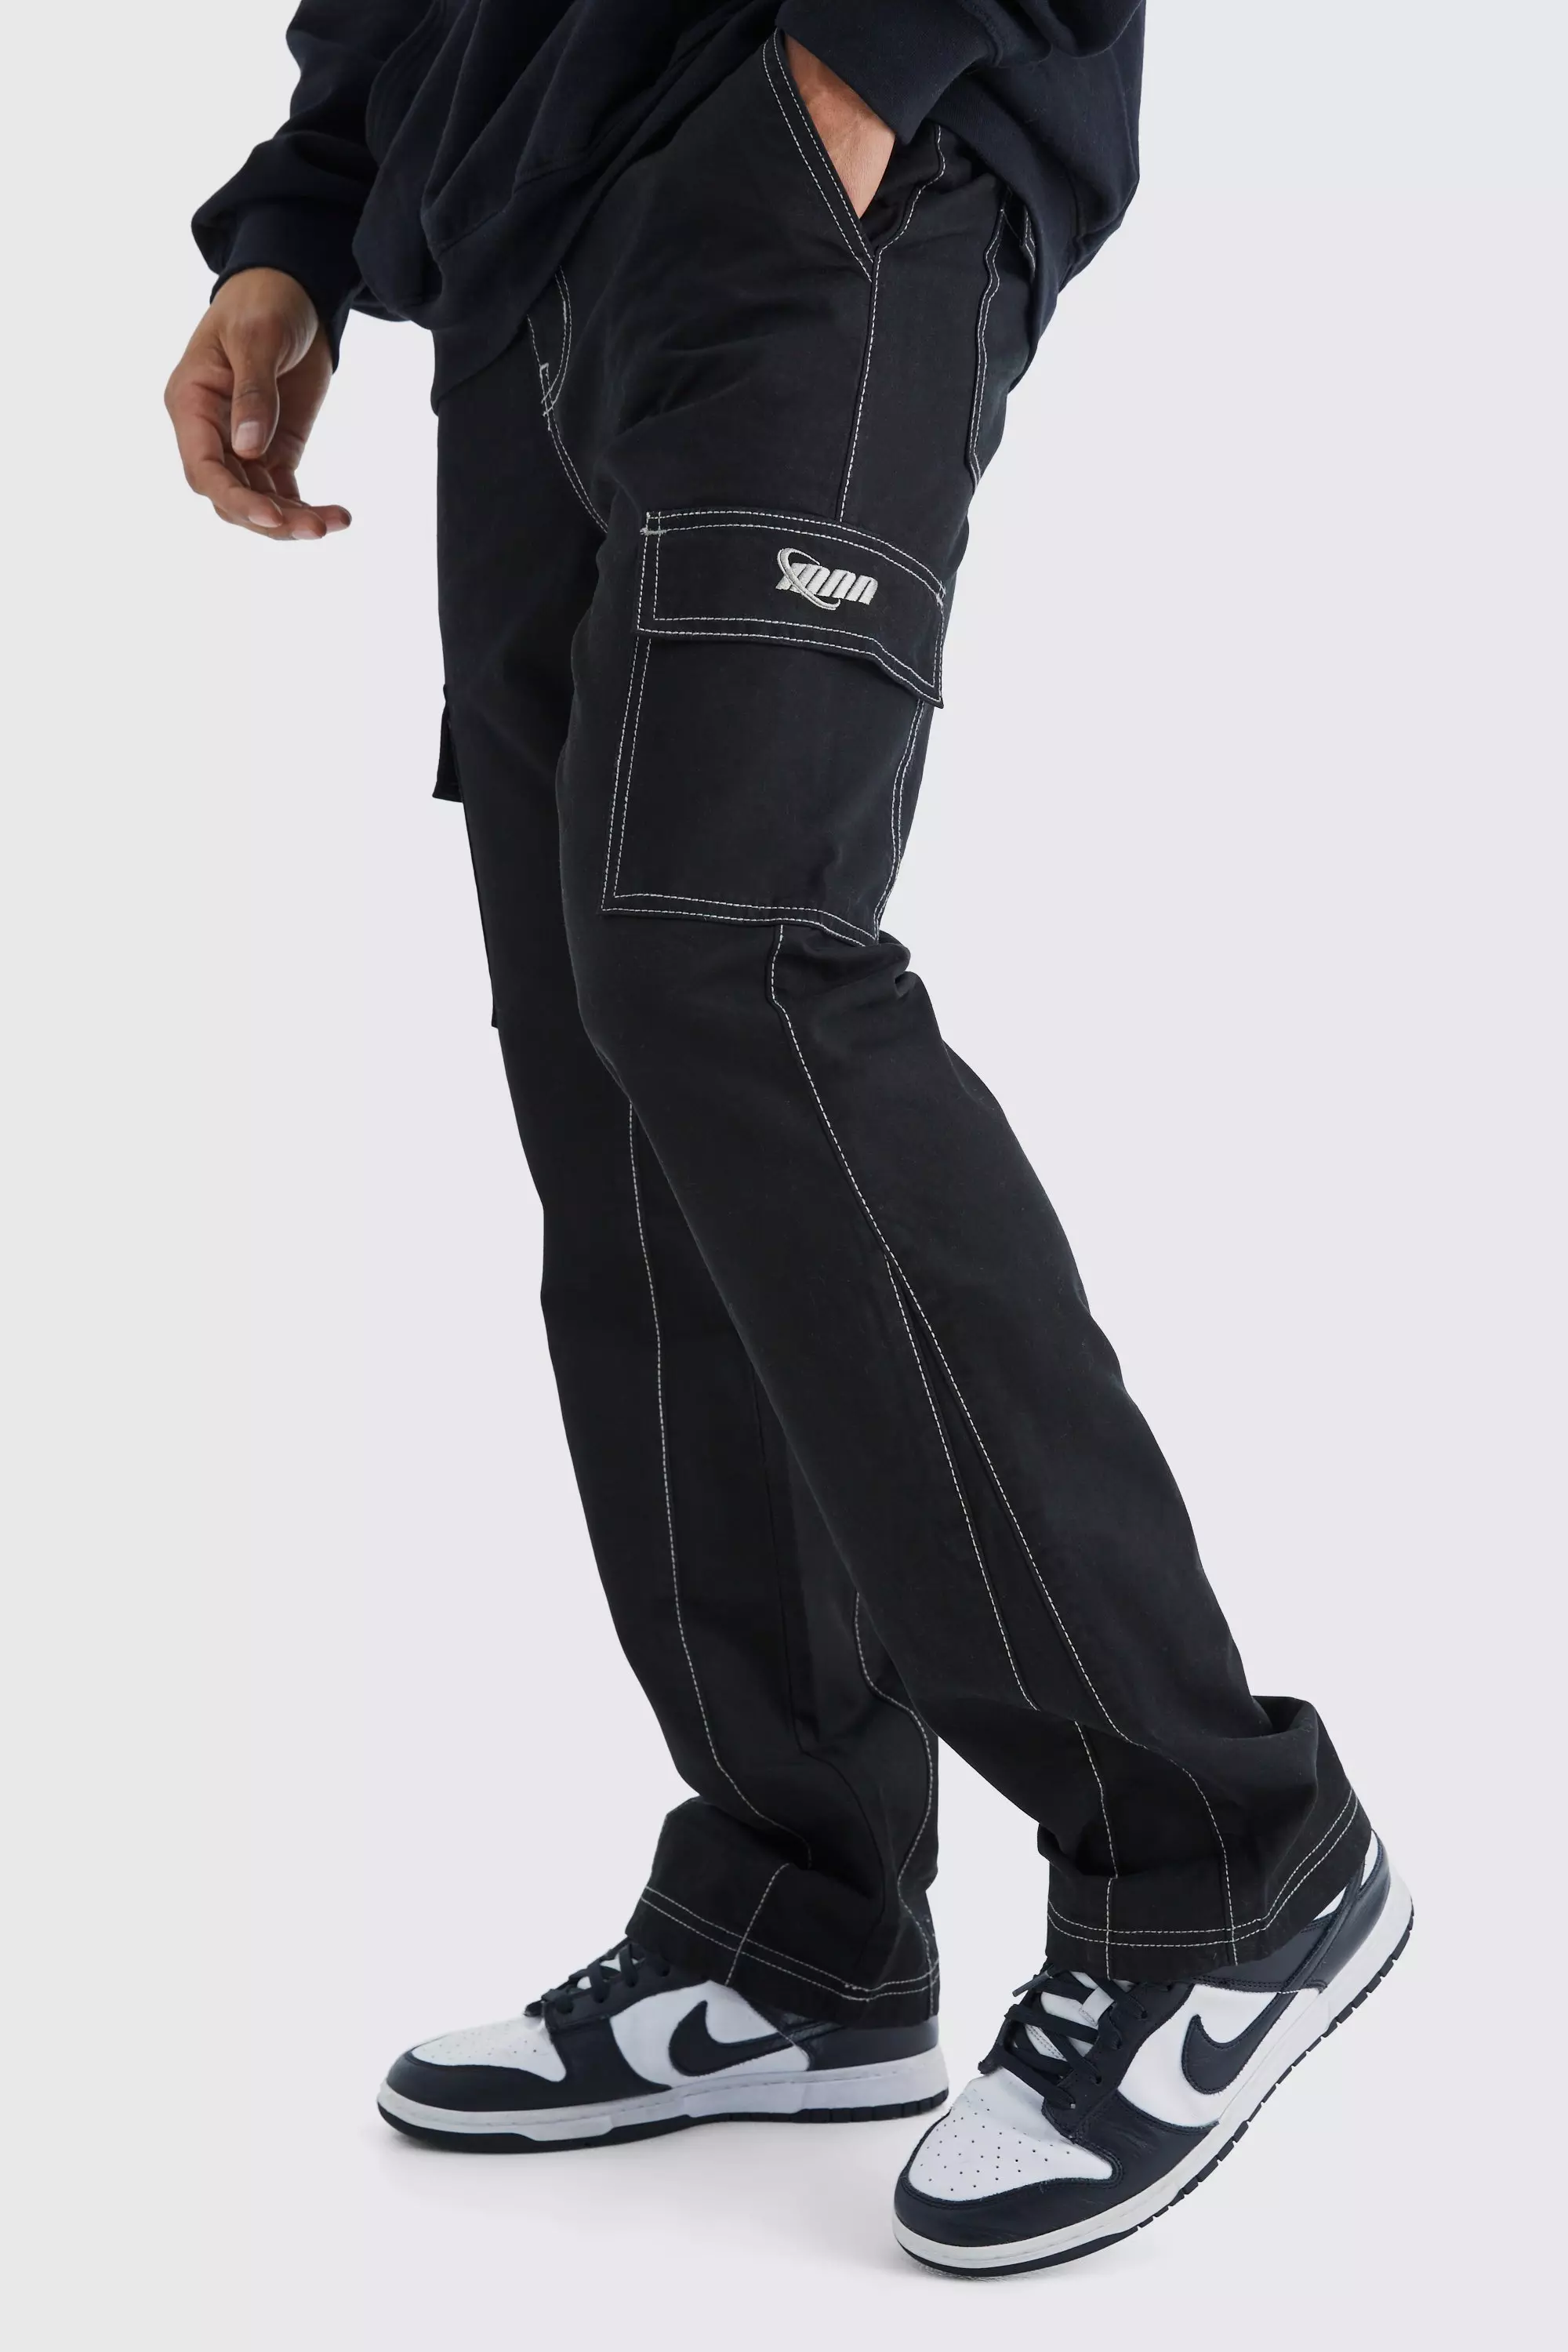 Men's Black Cargo Pants